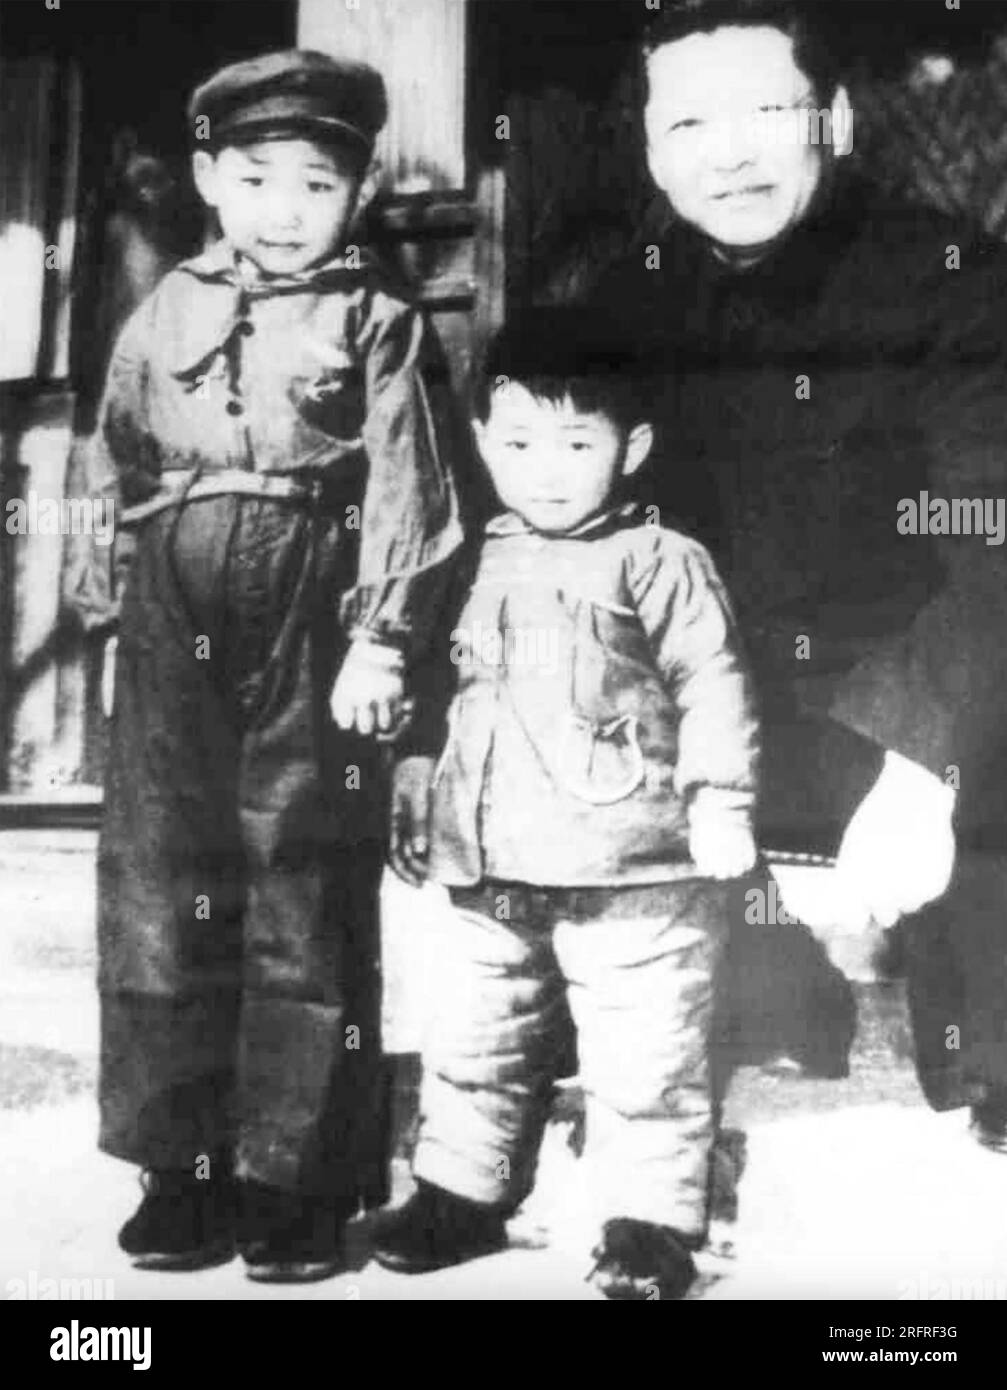 XI JINPING Generalsekretär der Kommunistischen Partei Chinas links als Kind im Jahr 1958 mit seinem Vater und seinem jüngeren Bruder. Stockfoto